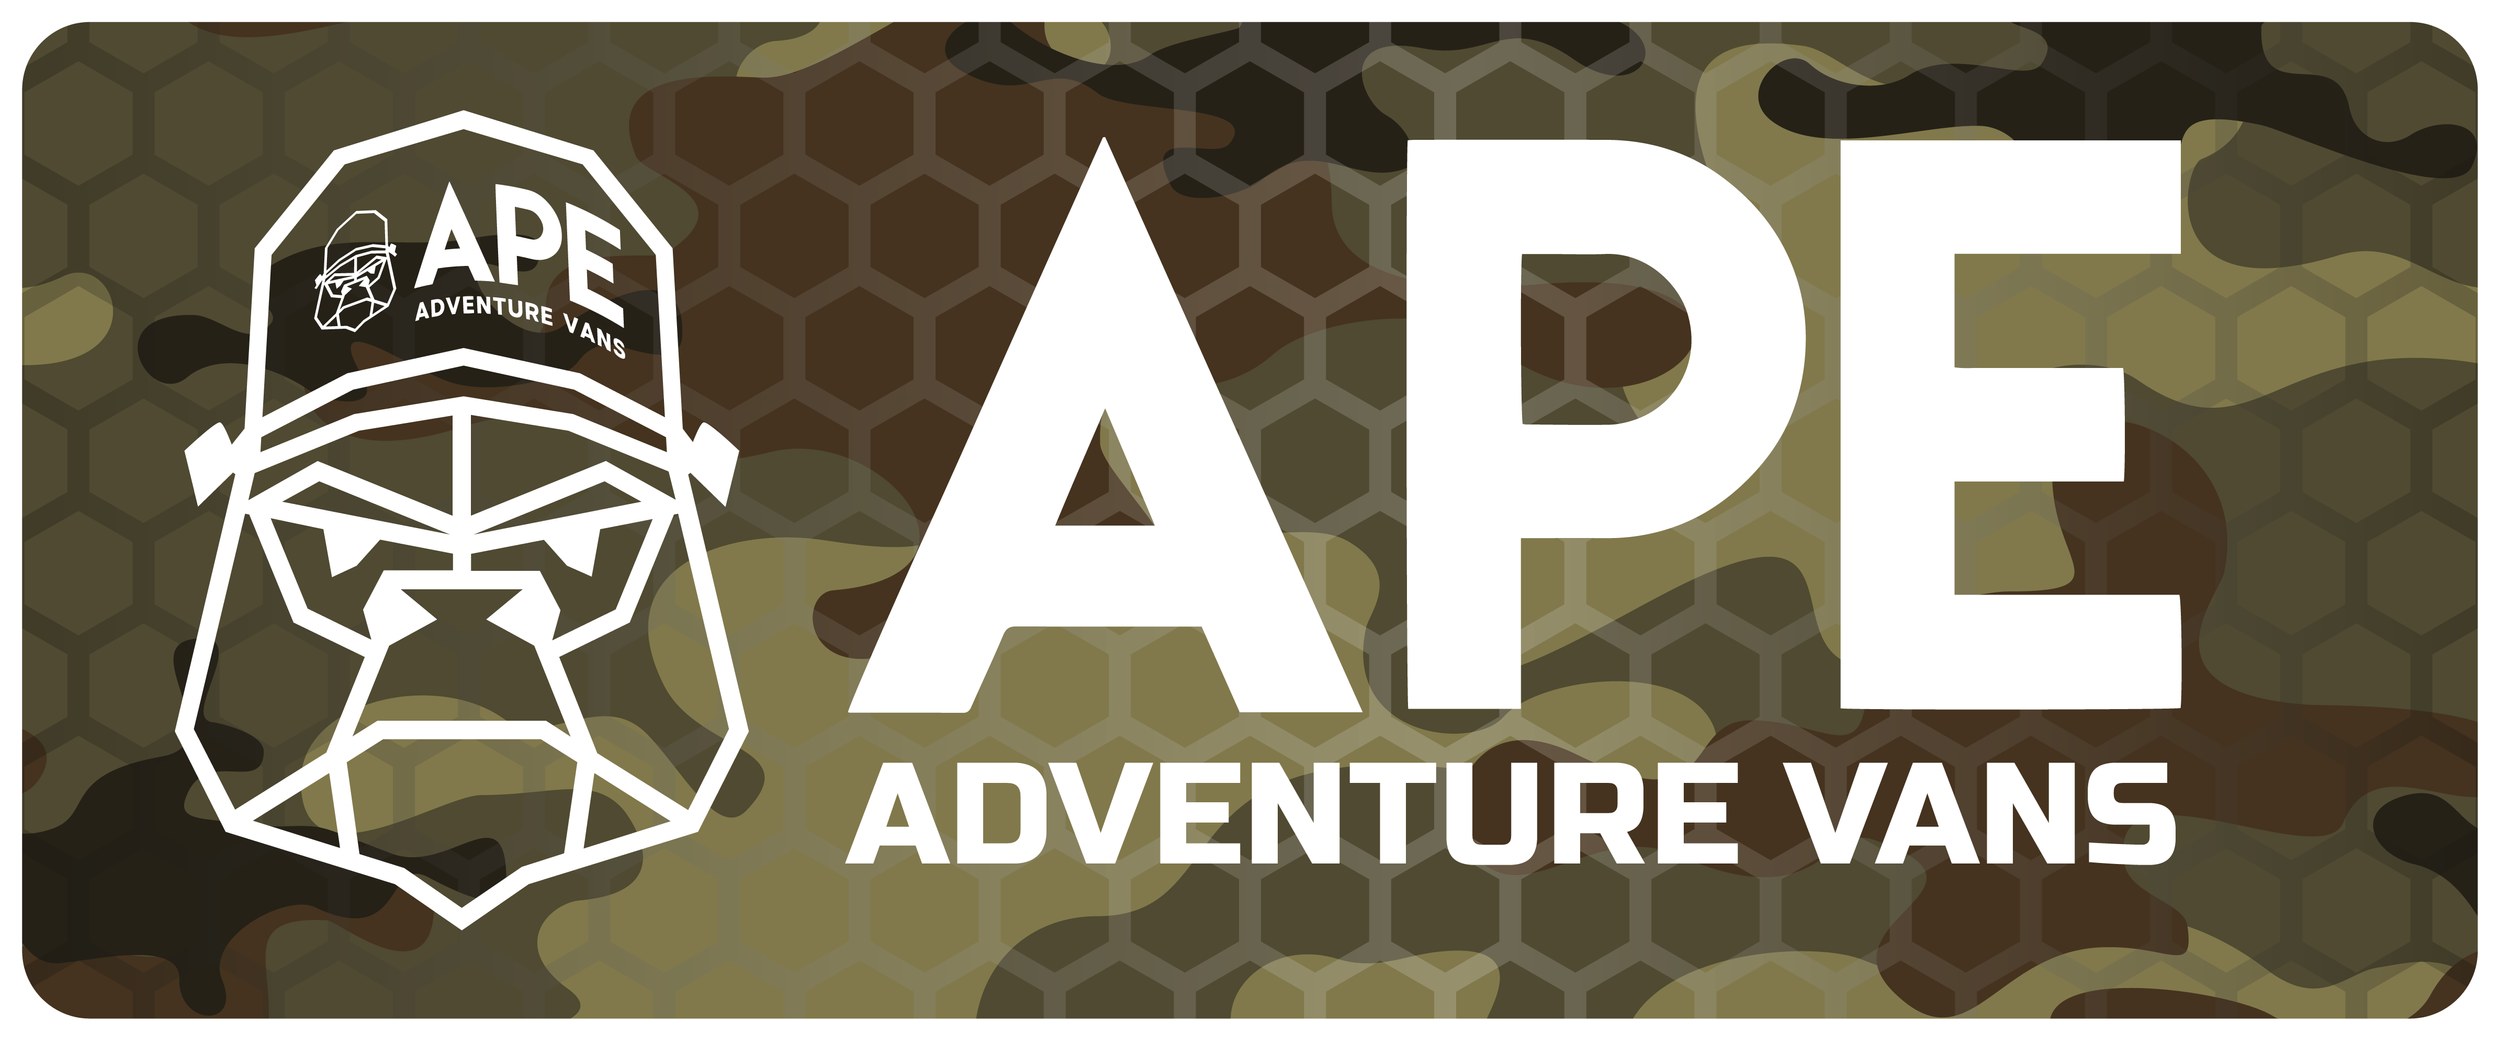 APE Adventure Vans